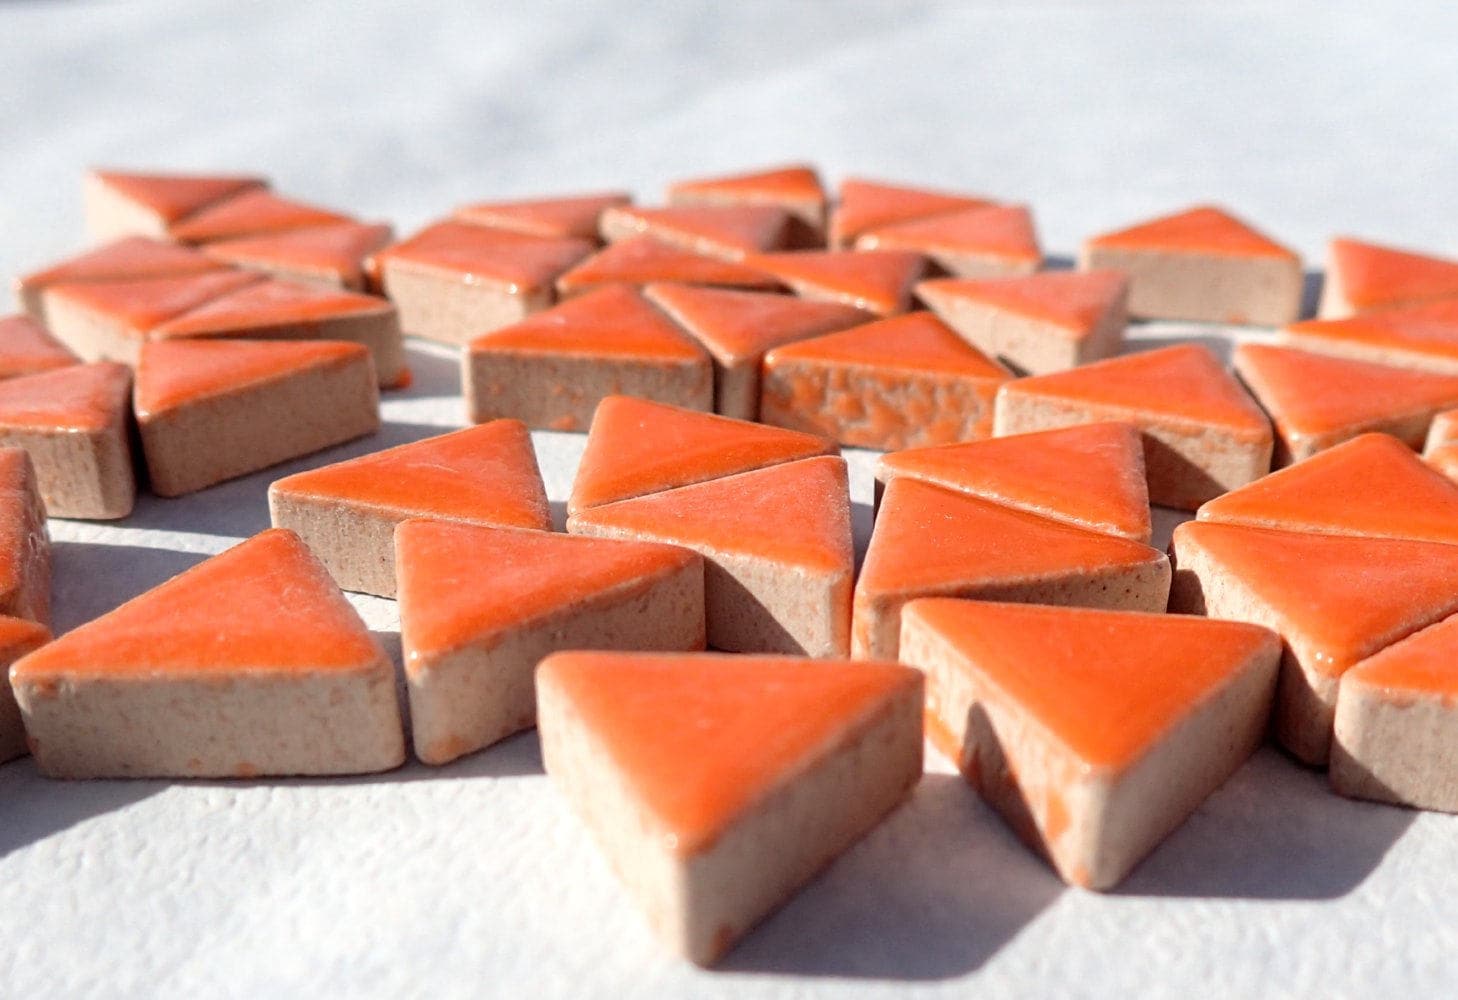 Orange Triangles Mosaic Tiles - 50g Ceramic - 15mm